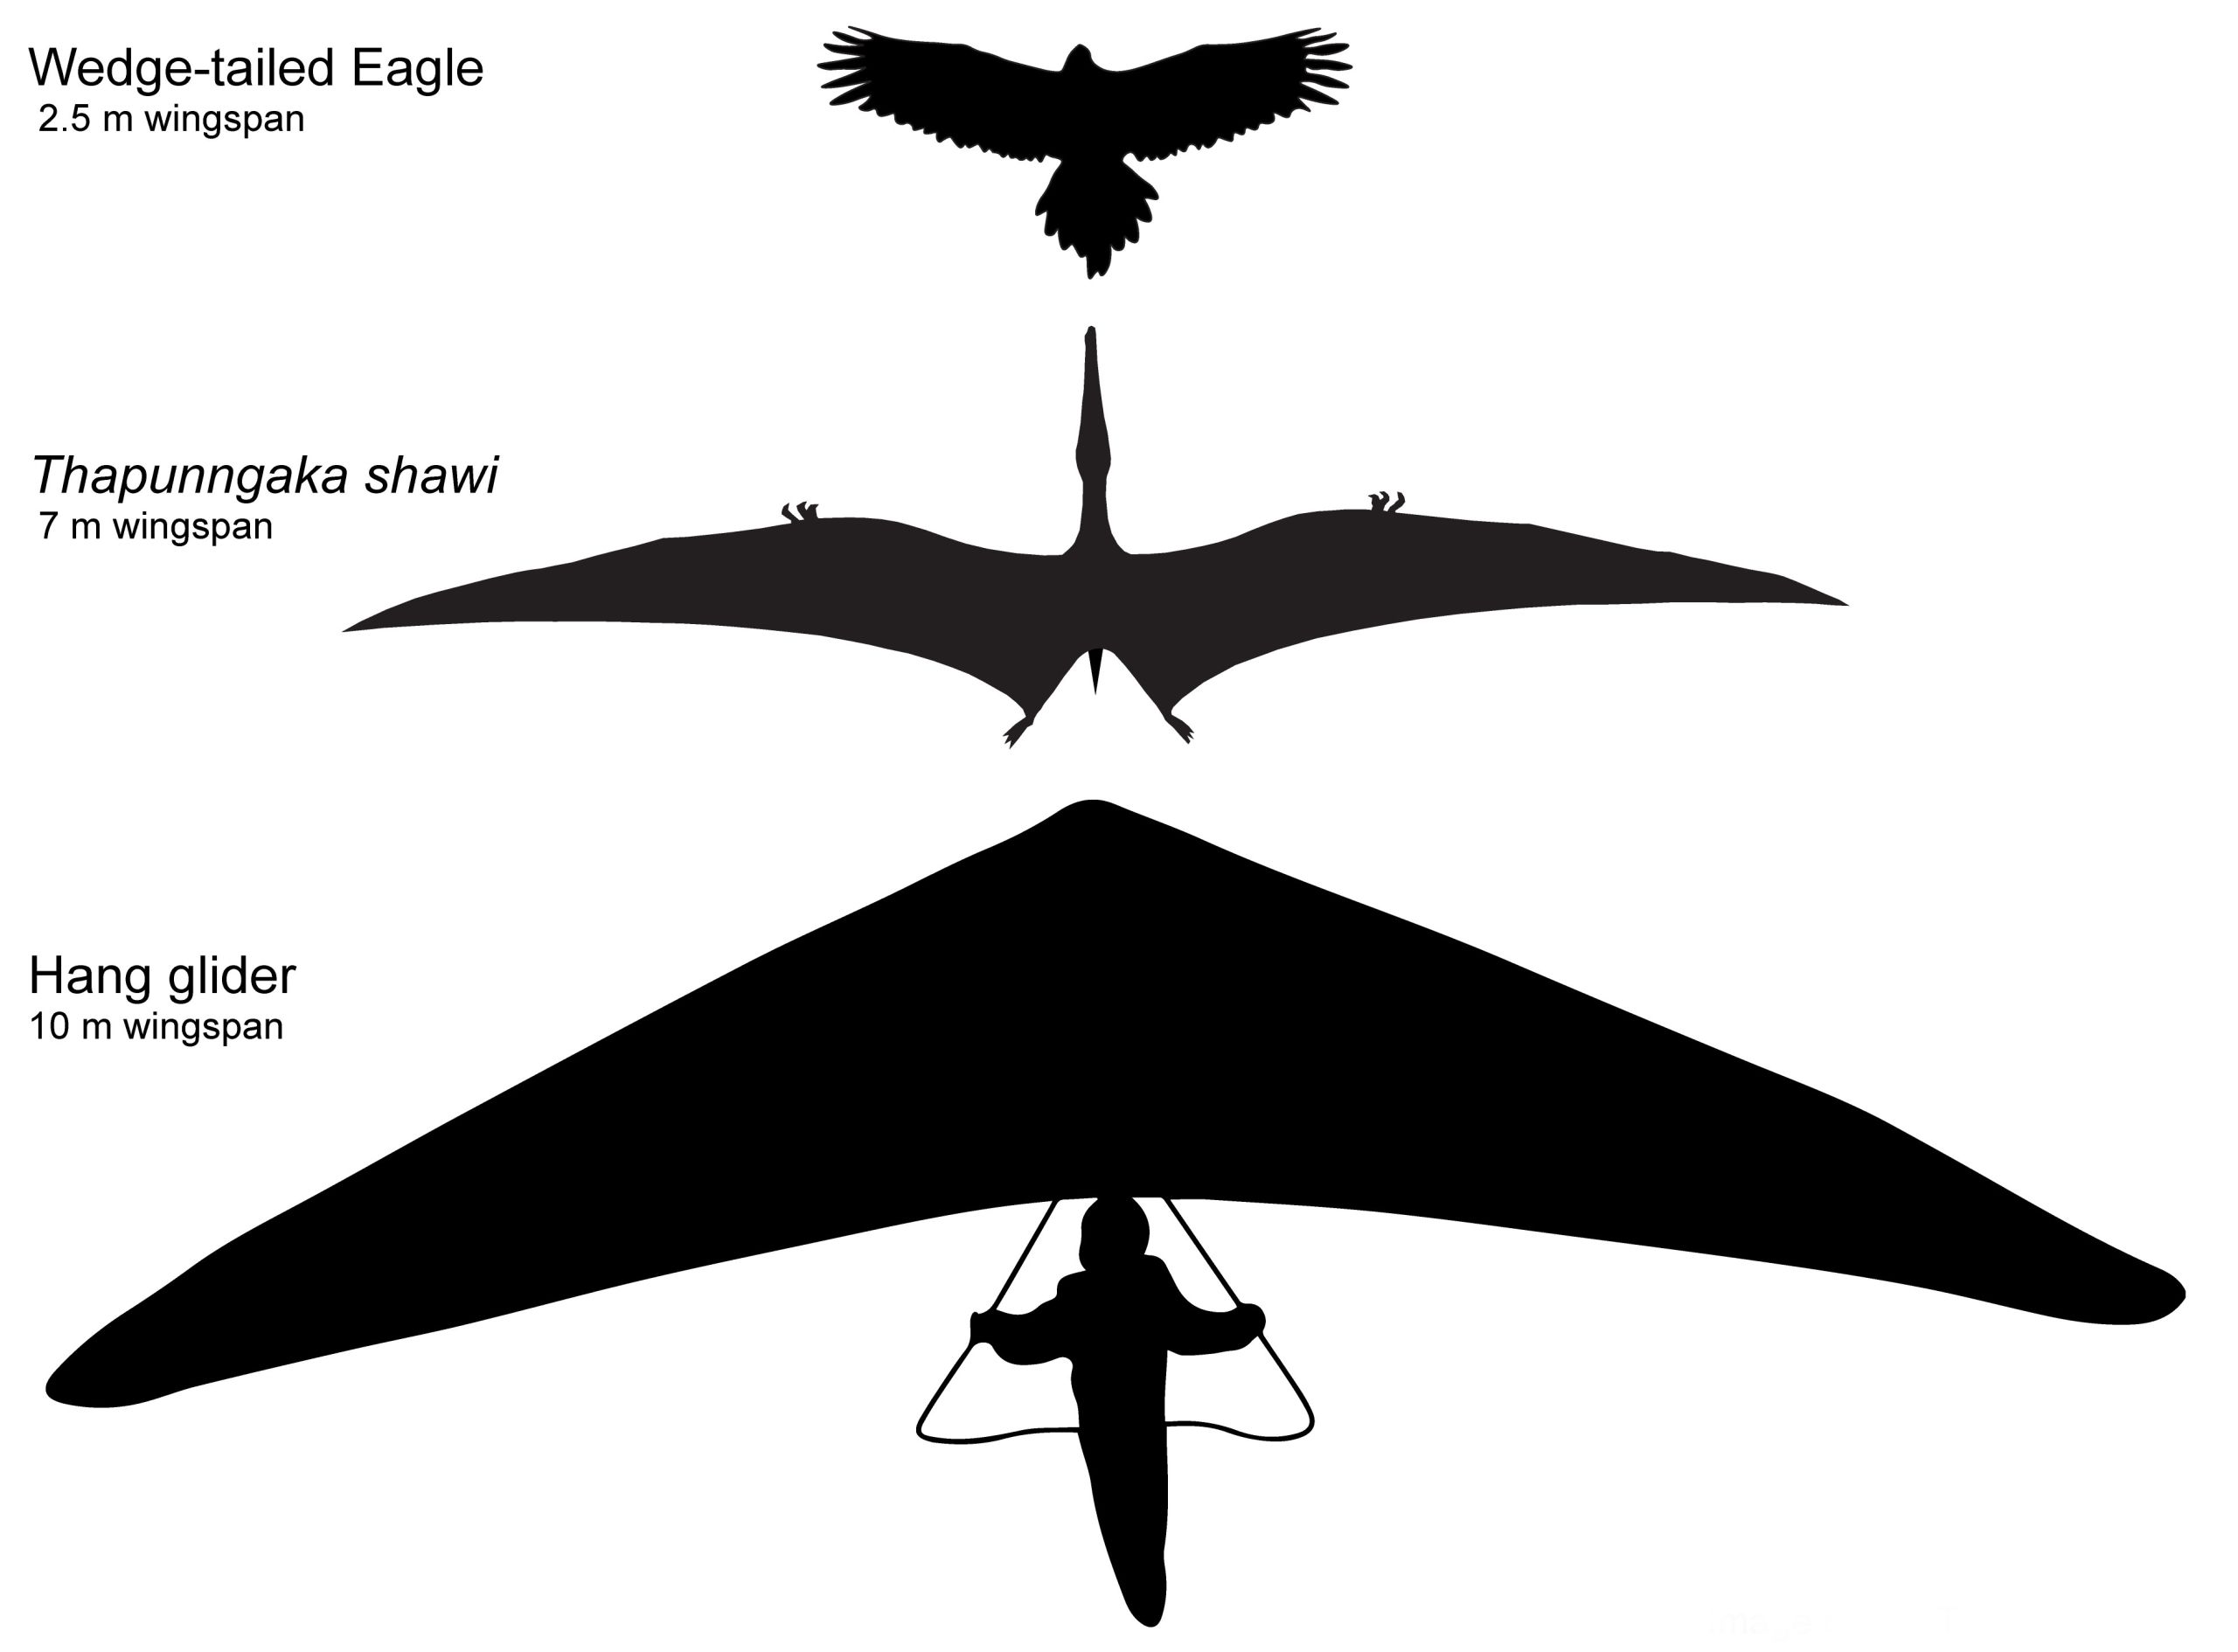 Contorno hipotético de Thapunngaka shawi com envergadura de 7 m, ao lado de uma águia de cauda em cunha (2.5 m de envergadura) e uma asa delta (10 m de envergadura). Tim Richards